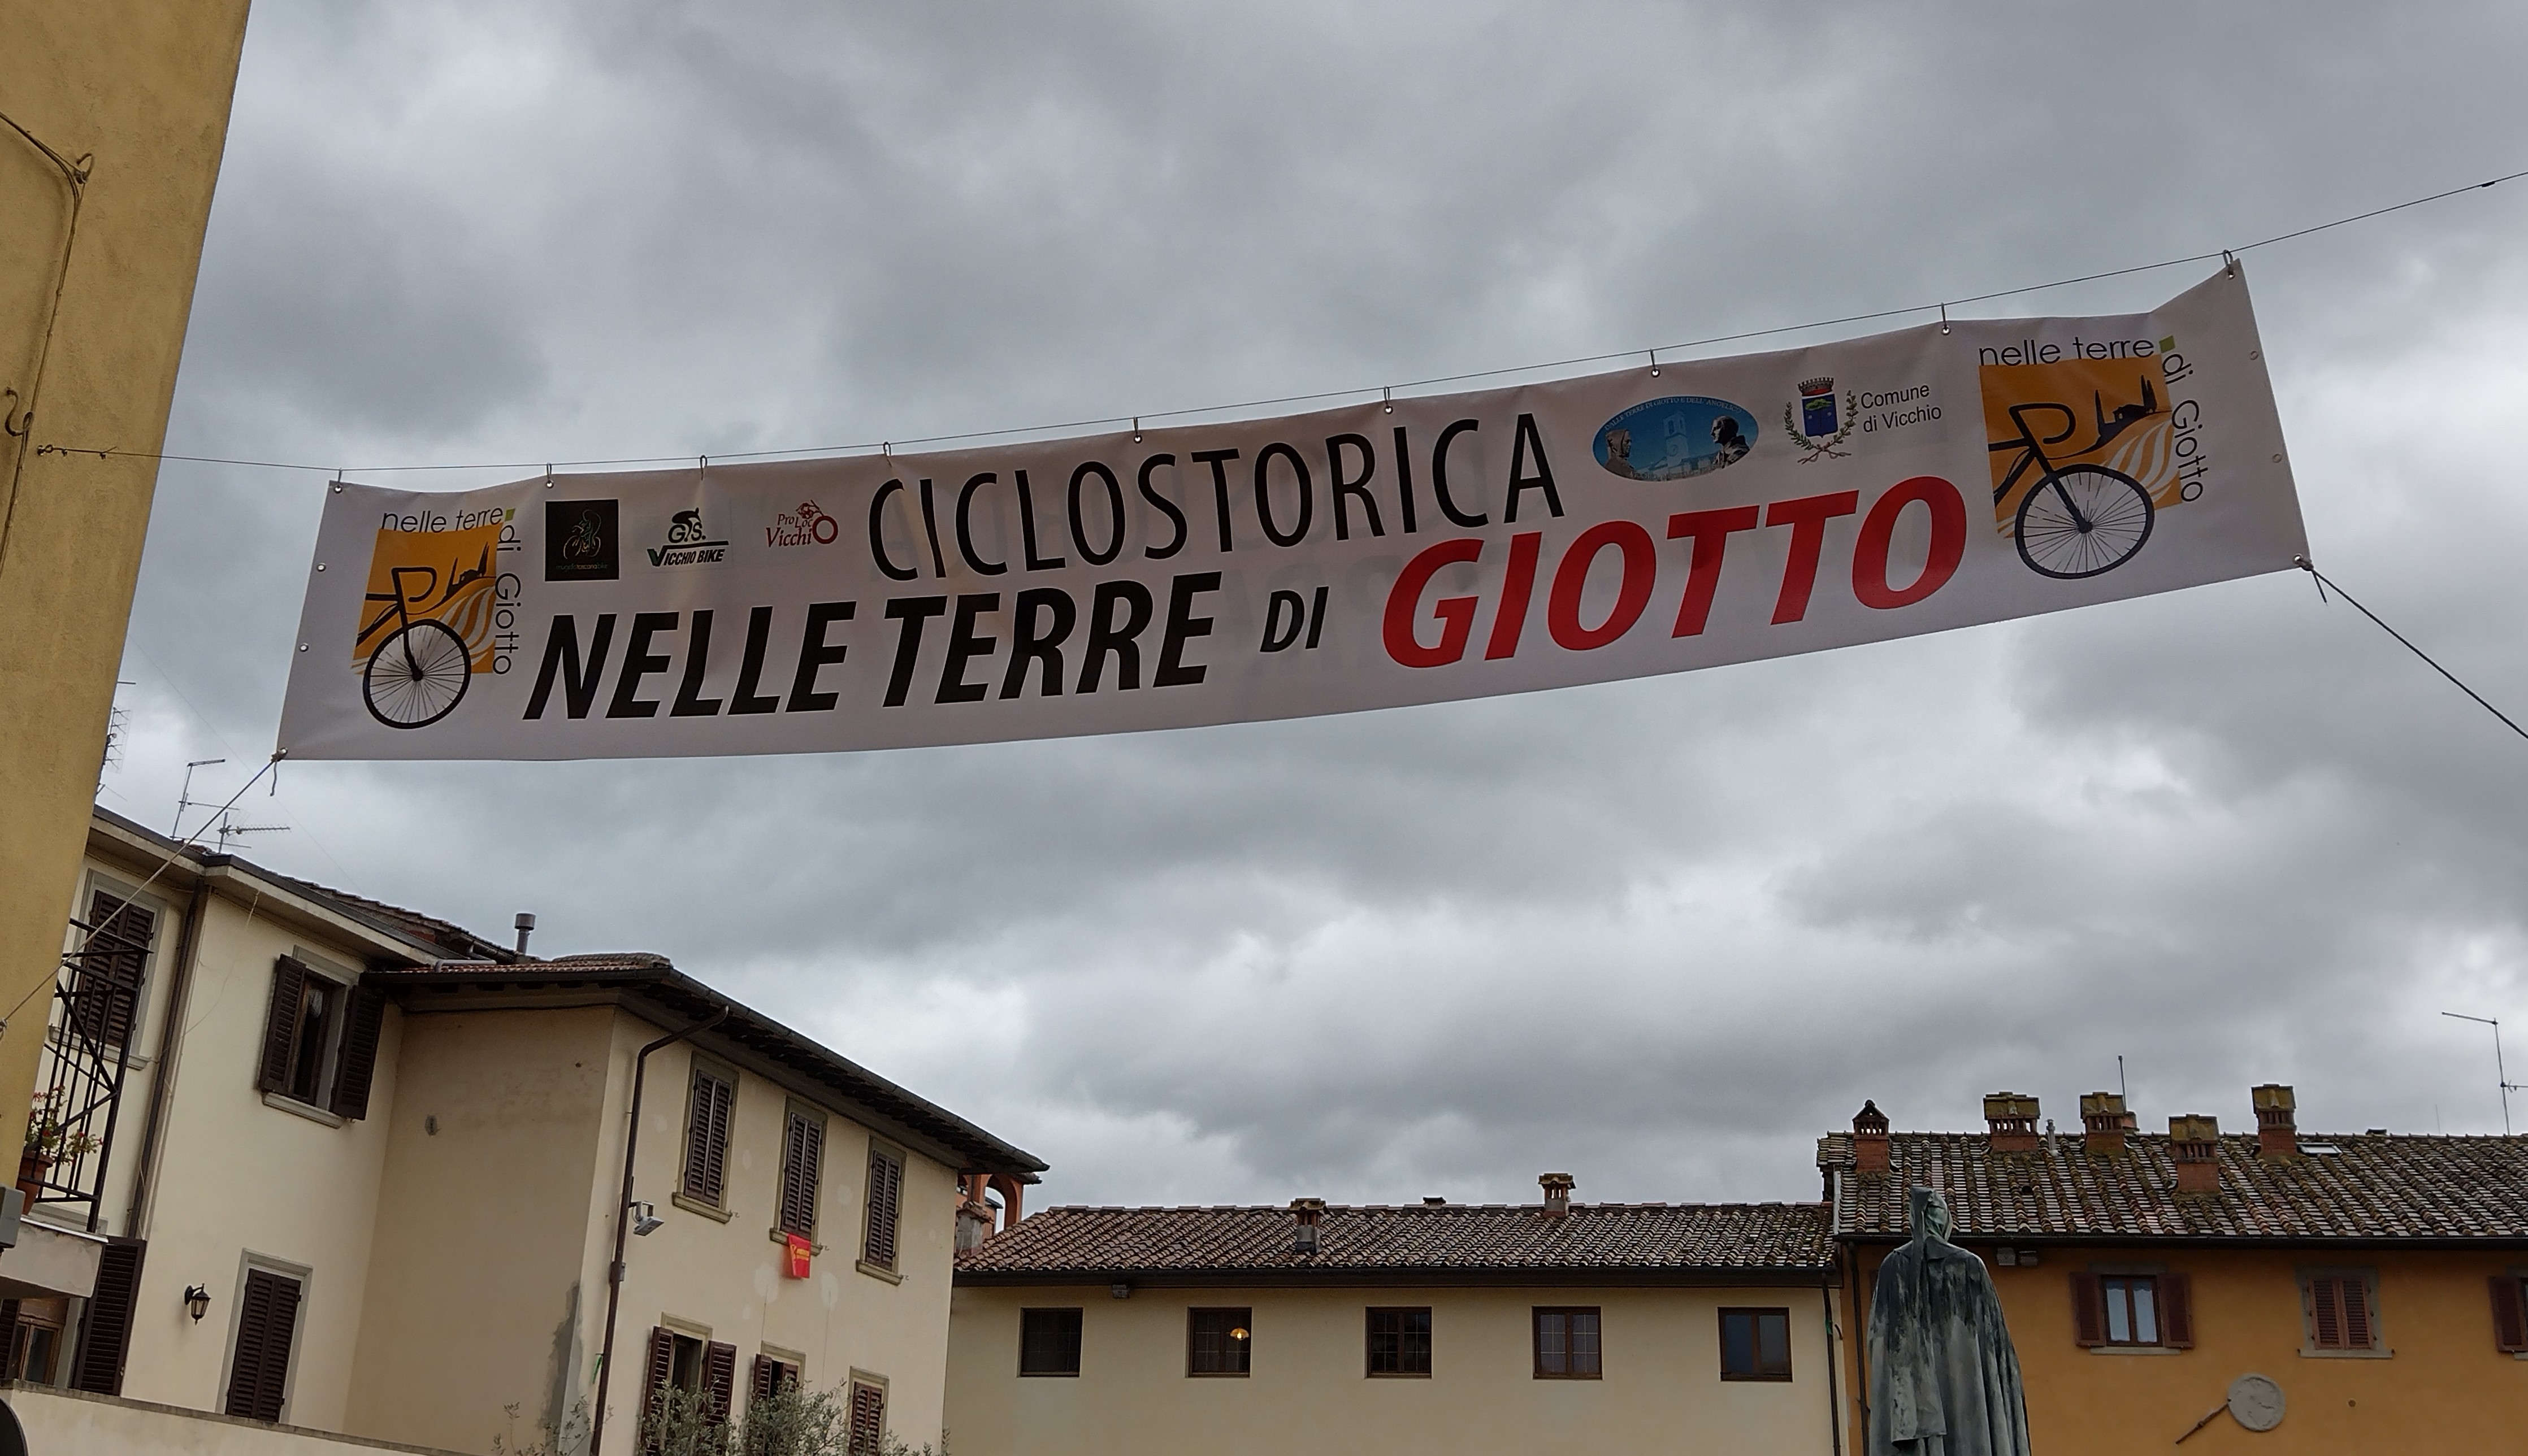 Ciclostorica Nelle terre di Giotto